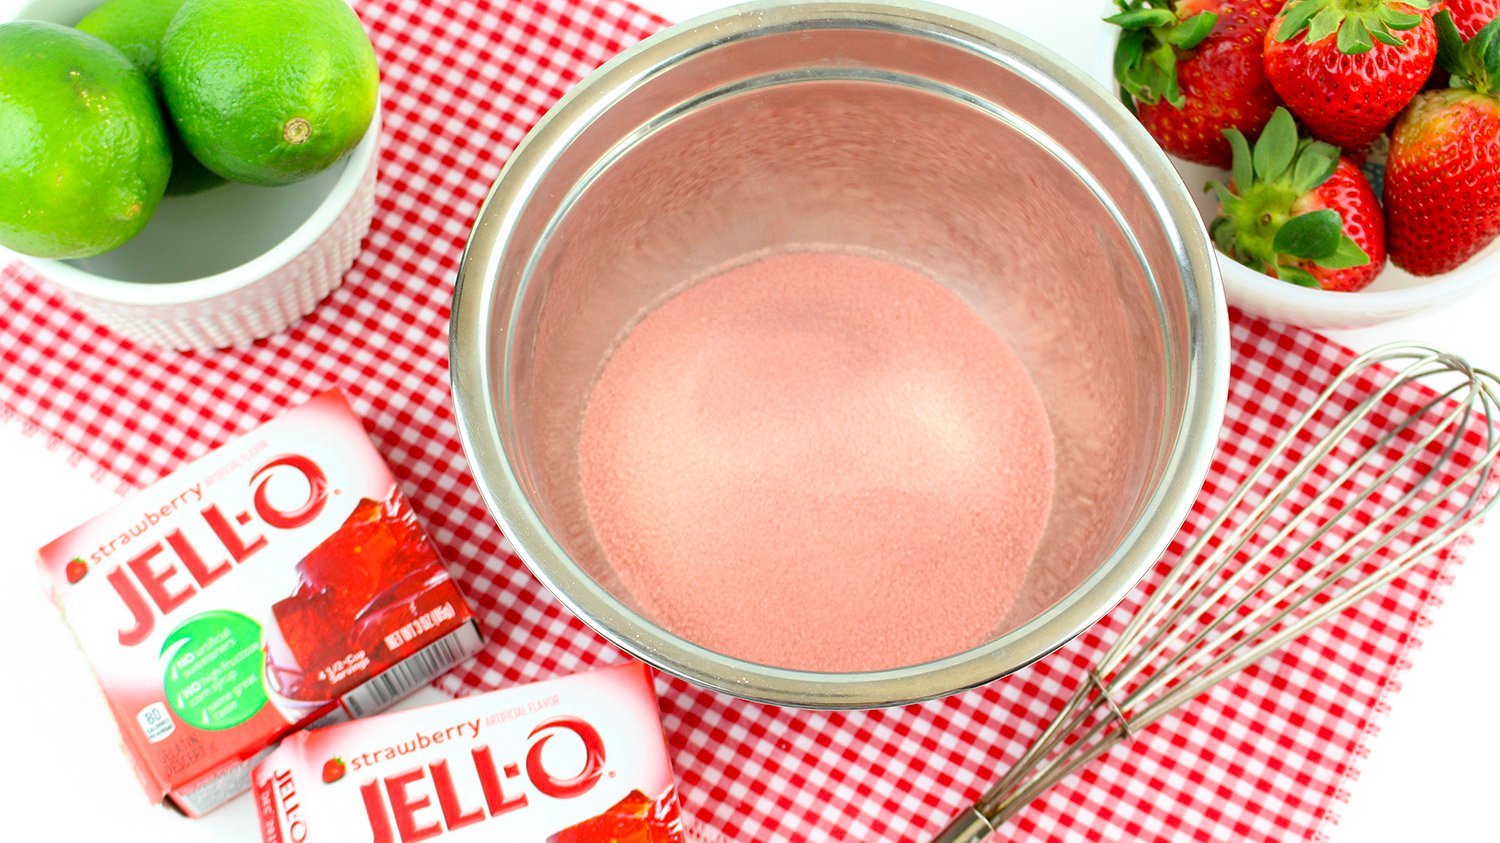 strawberry jello powder in a bowl